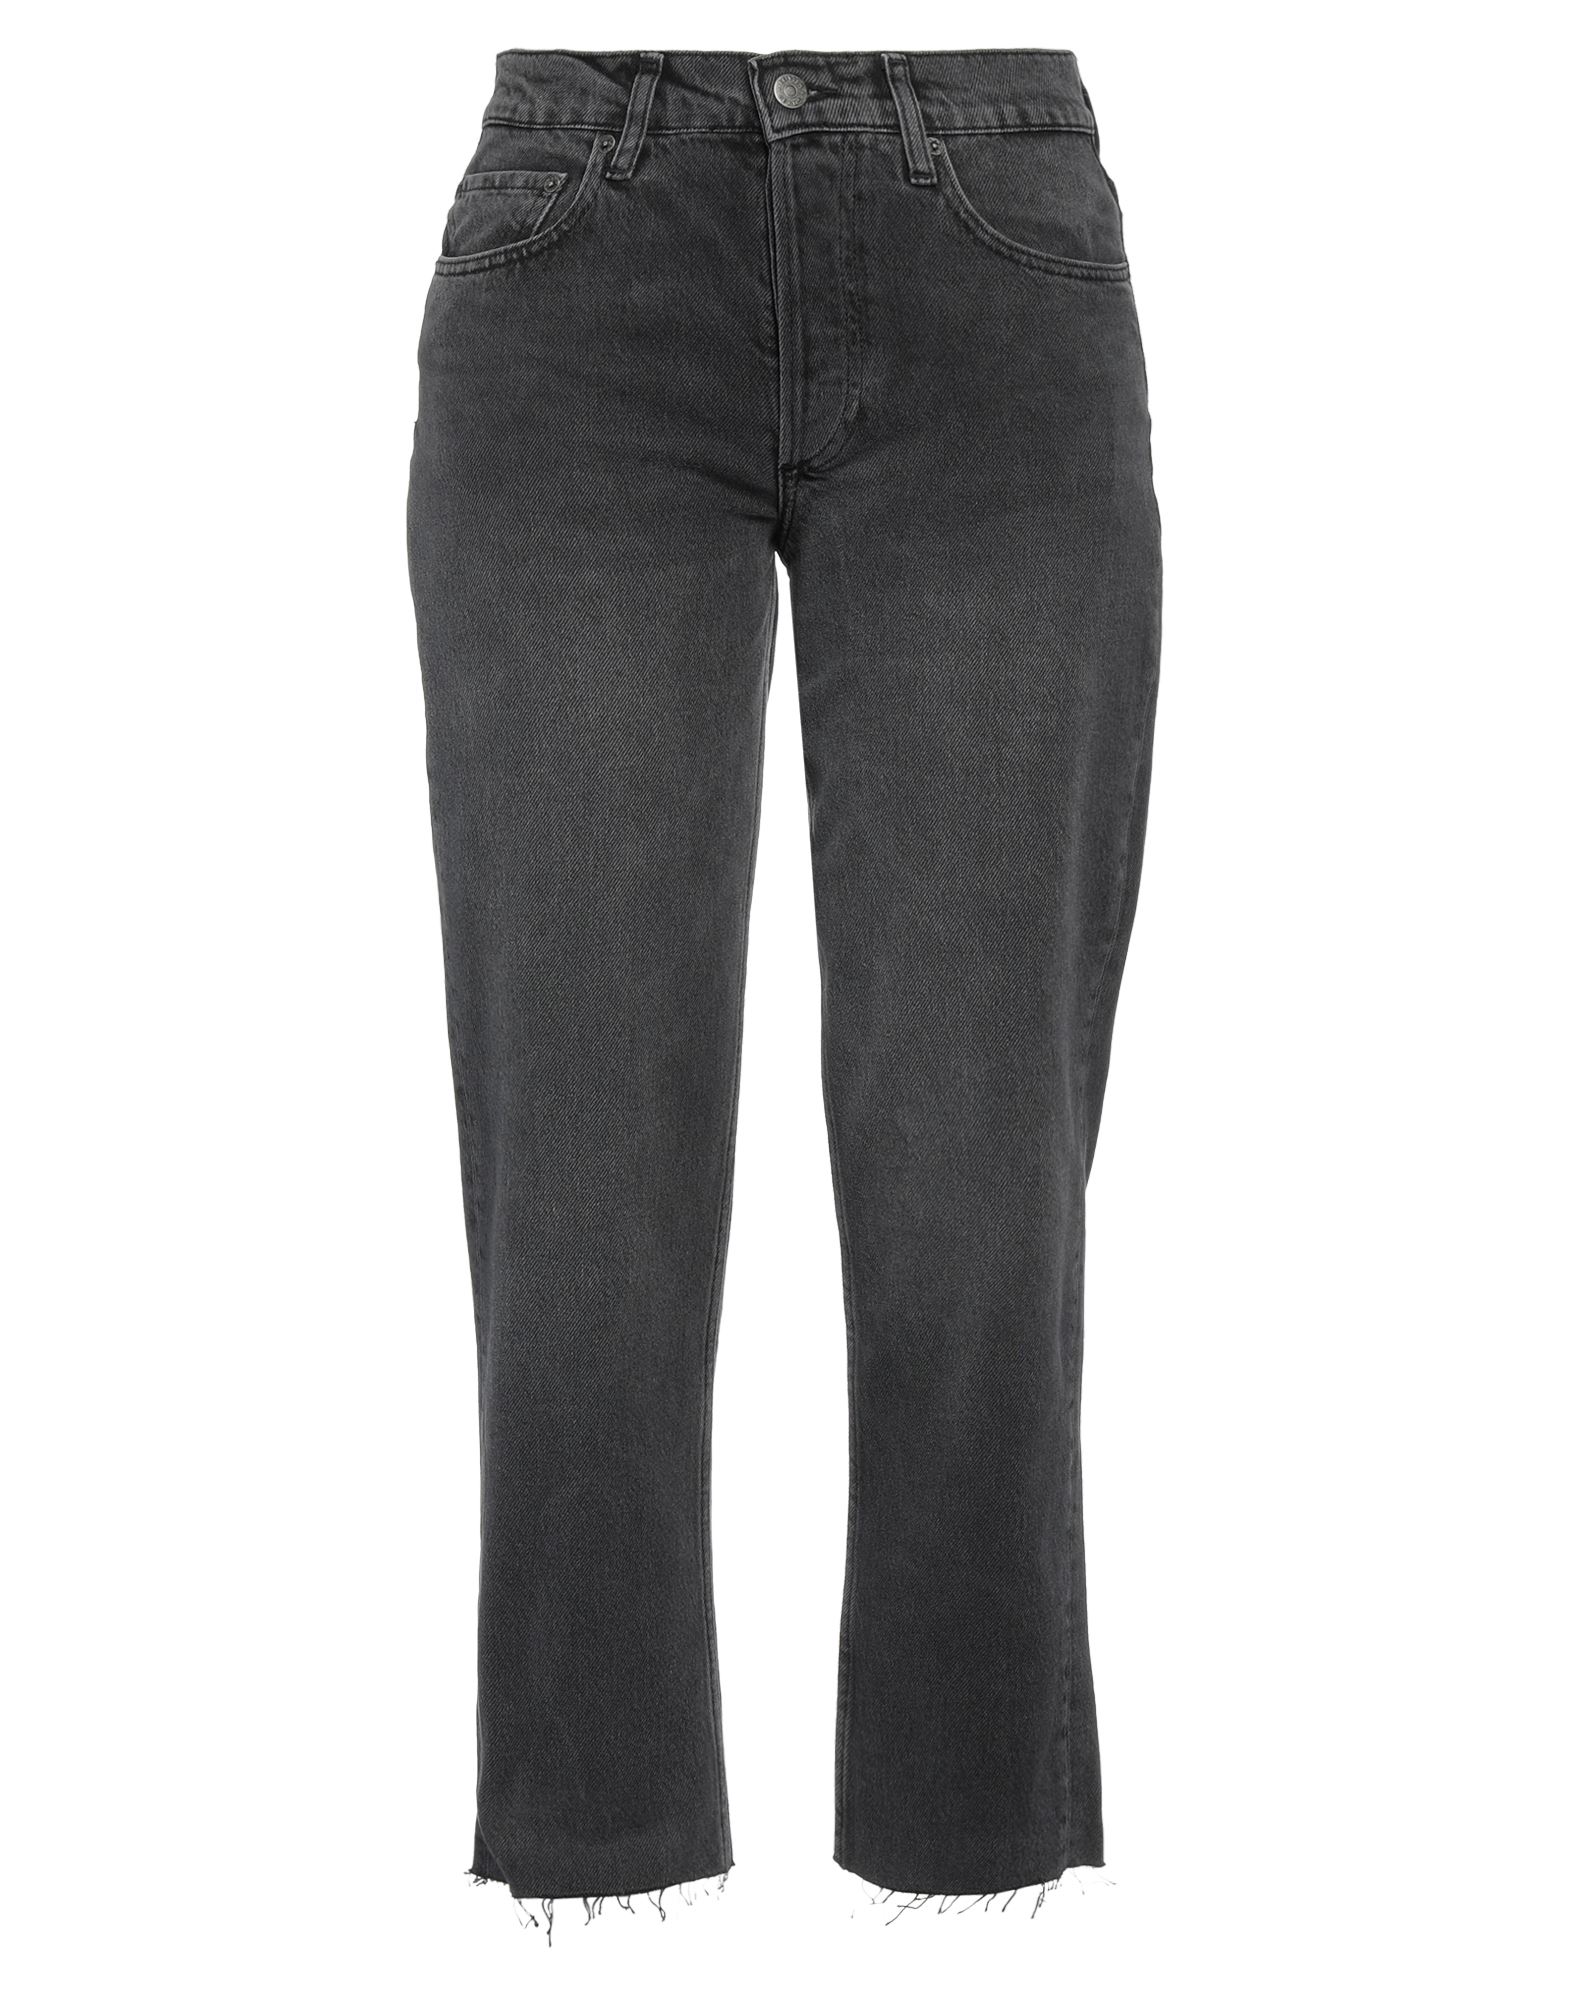 Shop Boyish Woman Jeans Black Size 28 Recycled Cotton, Tencel, Organic Cotton